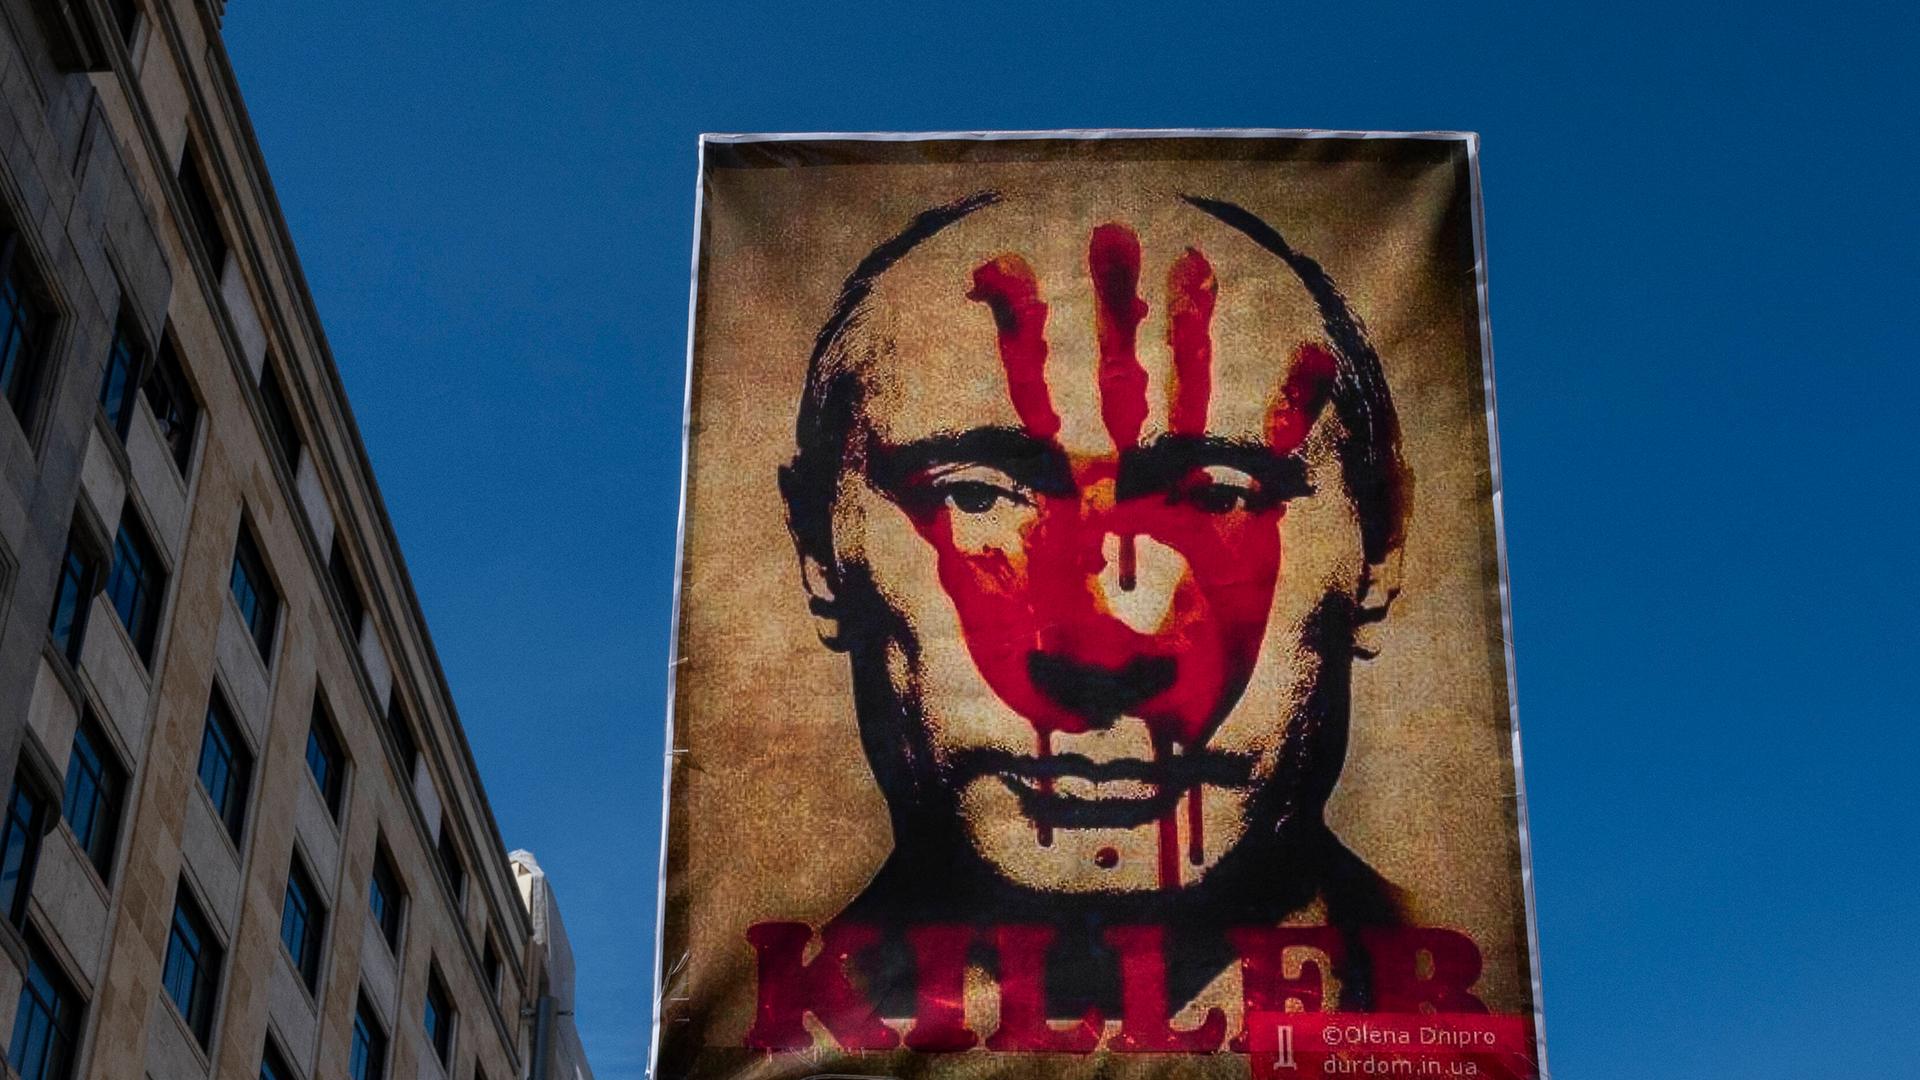 Ein Plakat mit Putins Porträt, das mit einem roten Handaufdruck und dem Schriftzug "Killer" versehen ist, wird durch eine Straße getragen.